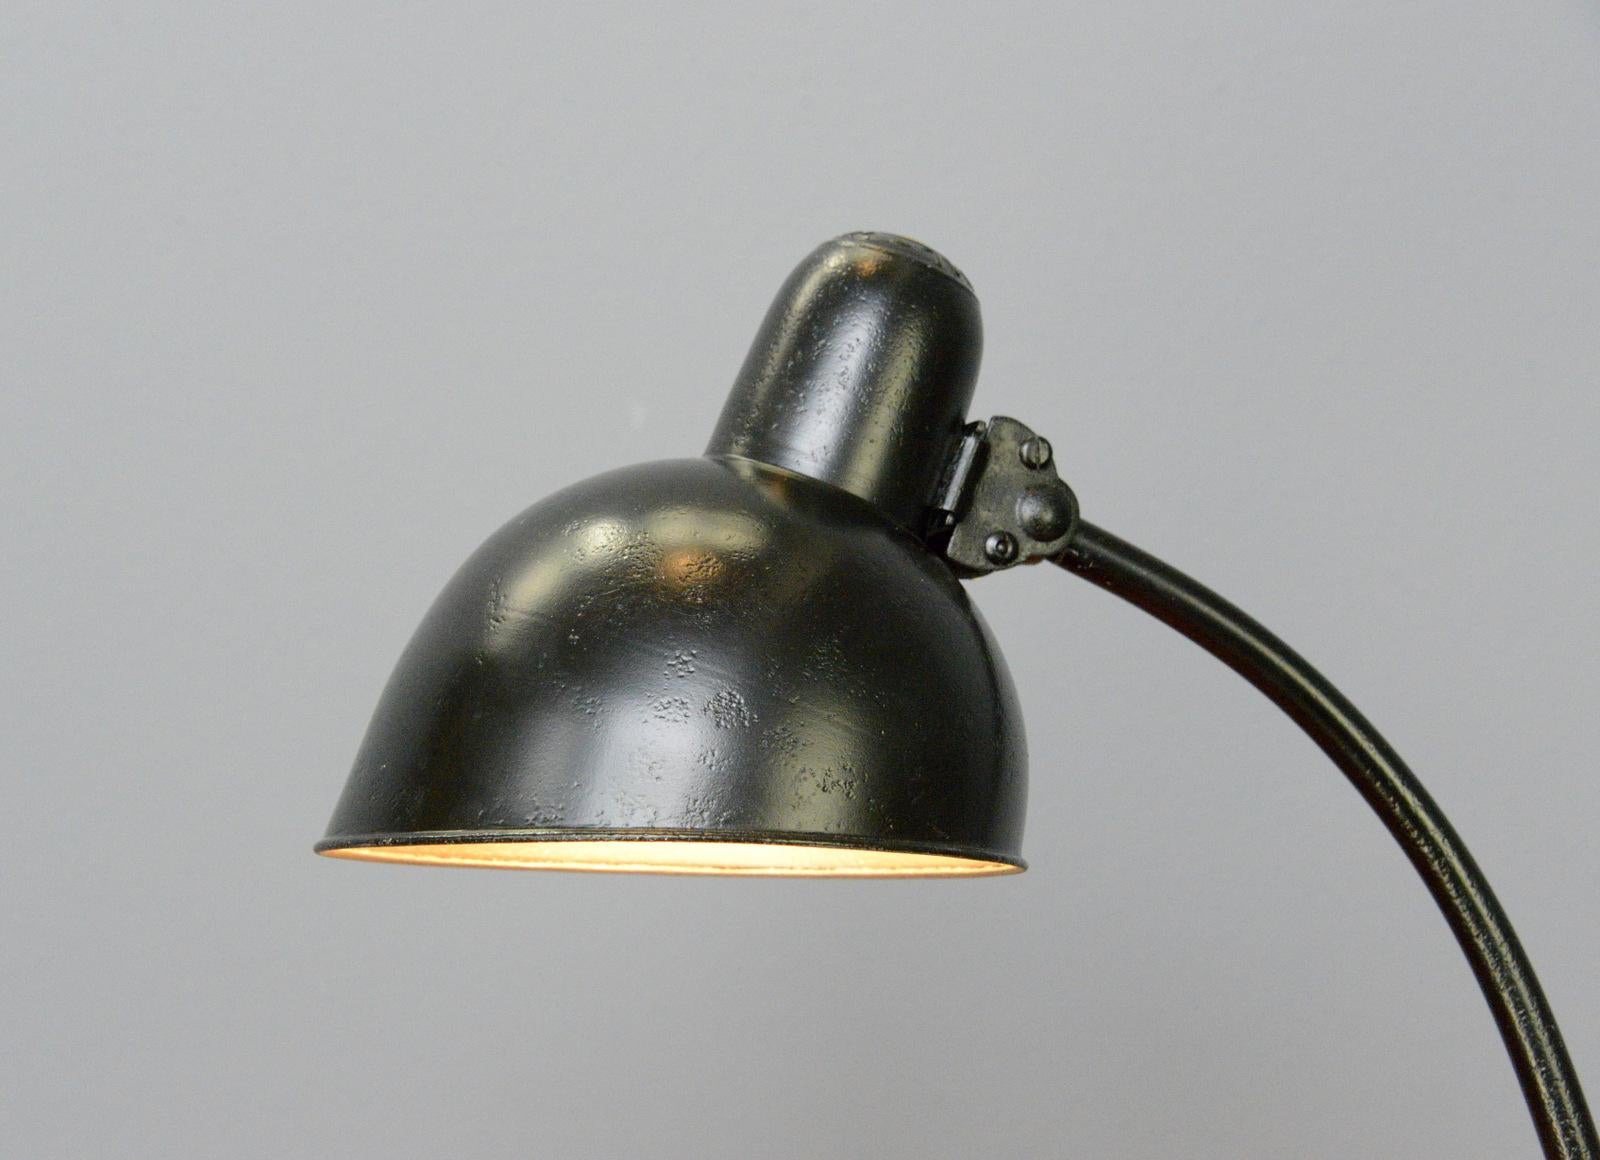 Modell 6556 Tischlampe von Kaiser Jdell um 1930 (Bauhaus)